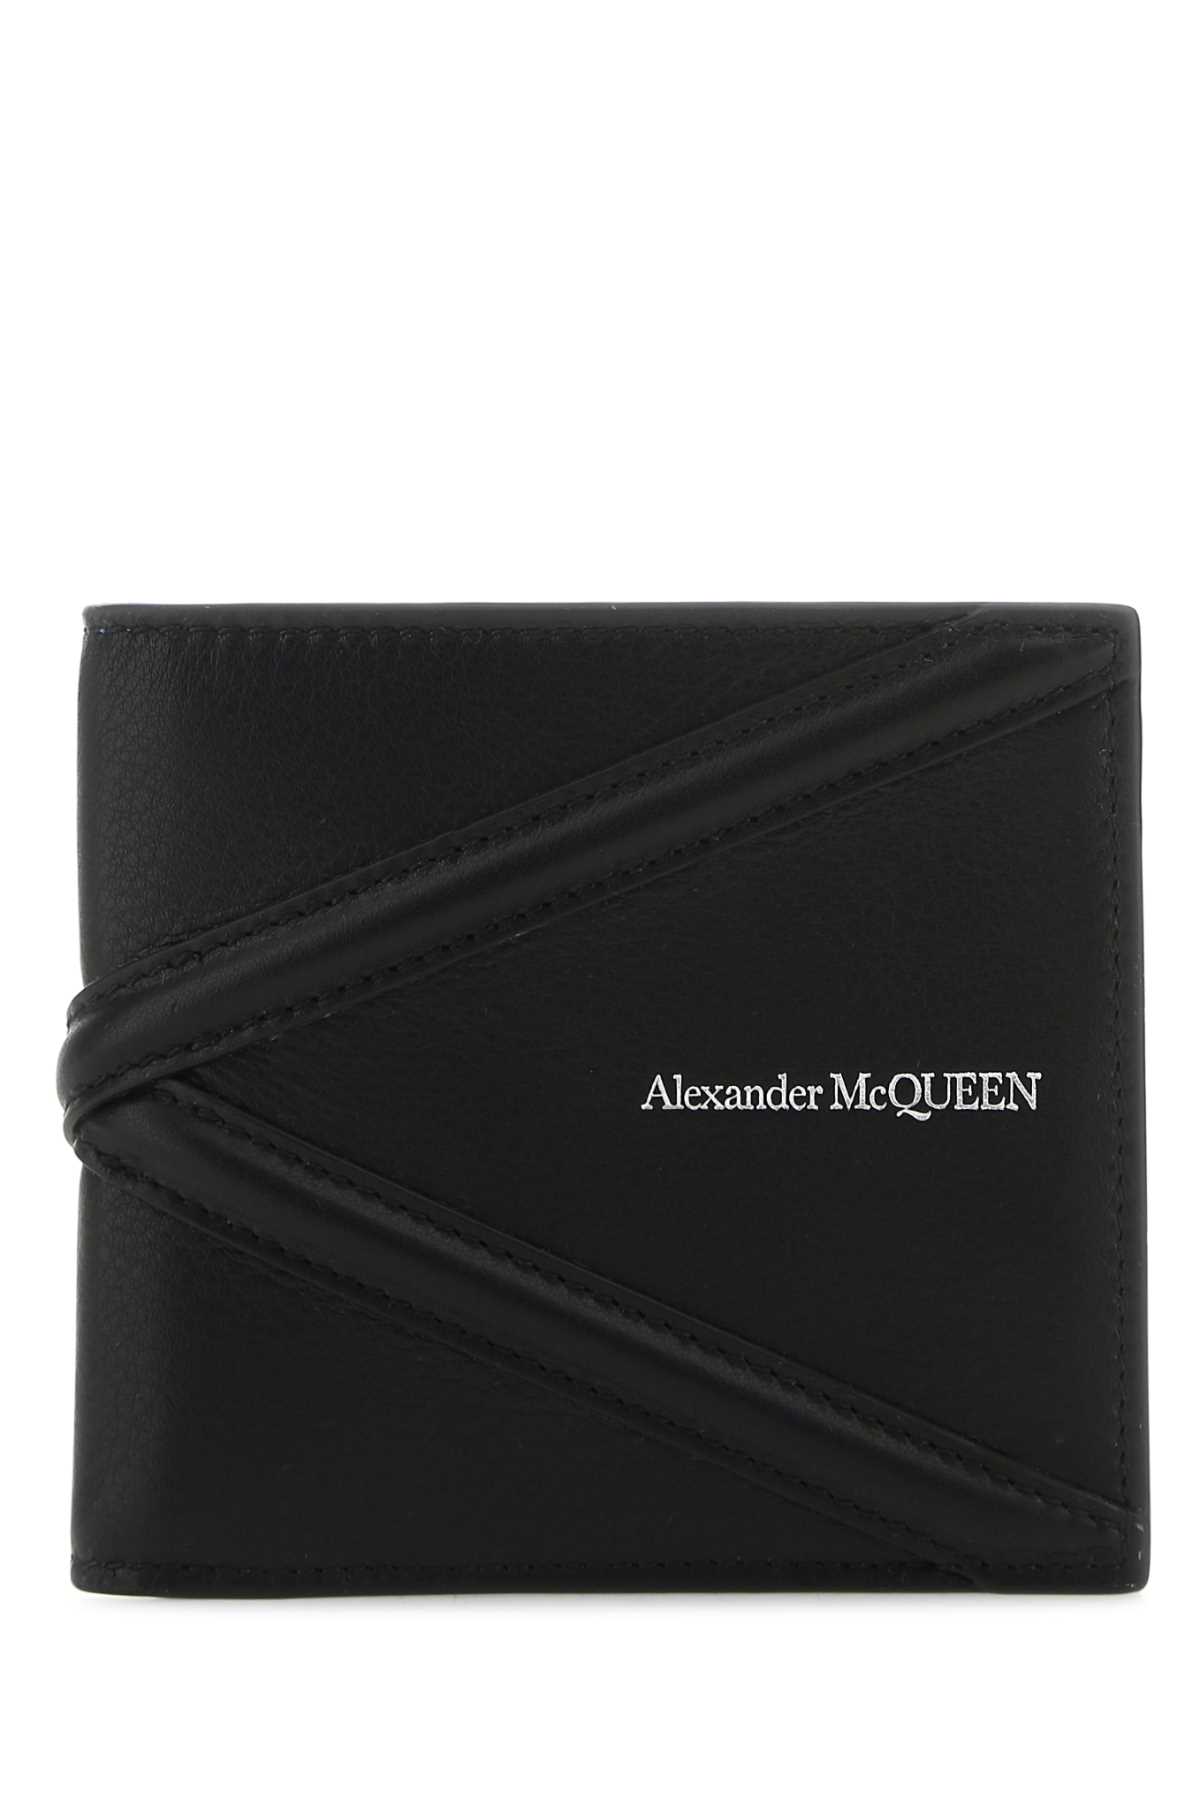 Alexander Mcqueen Black Leather Wallet In 1000